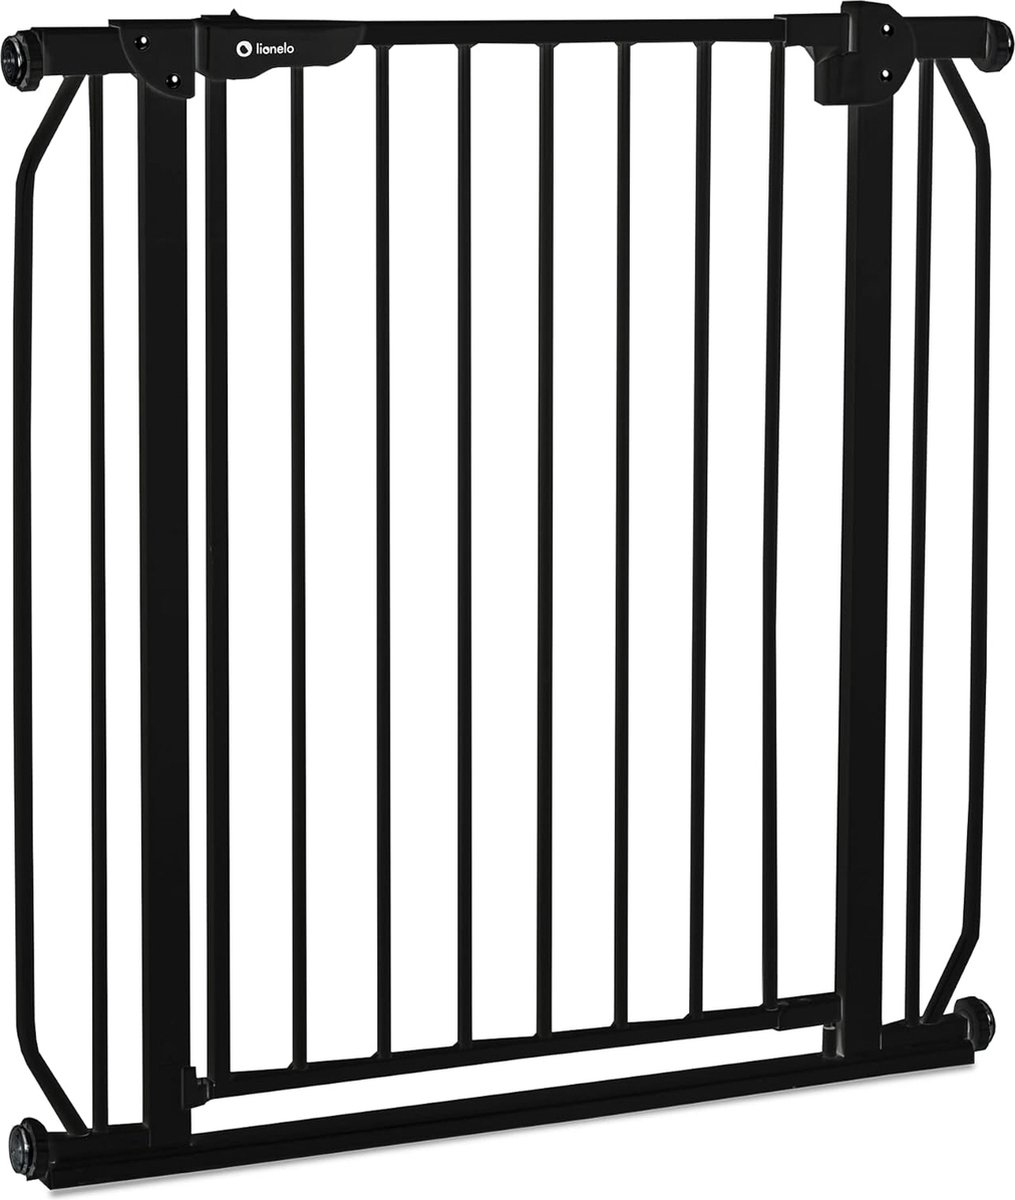 Barrière de sécurité enfant garde-corps protection fermeture d'escalier  95-105cm